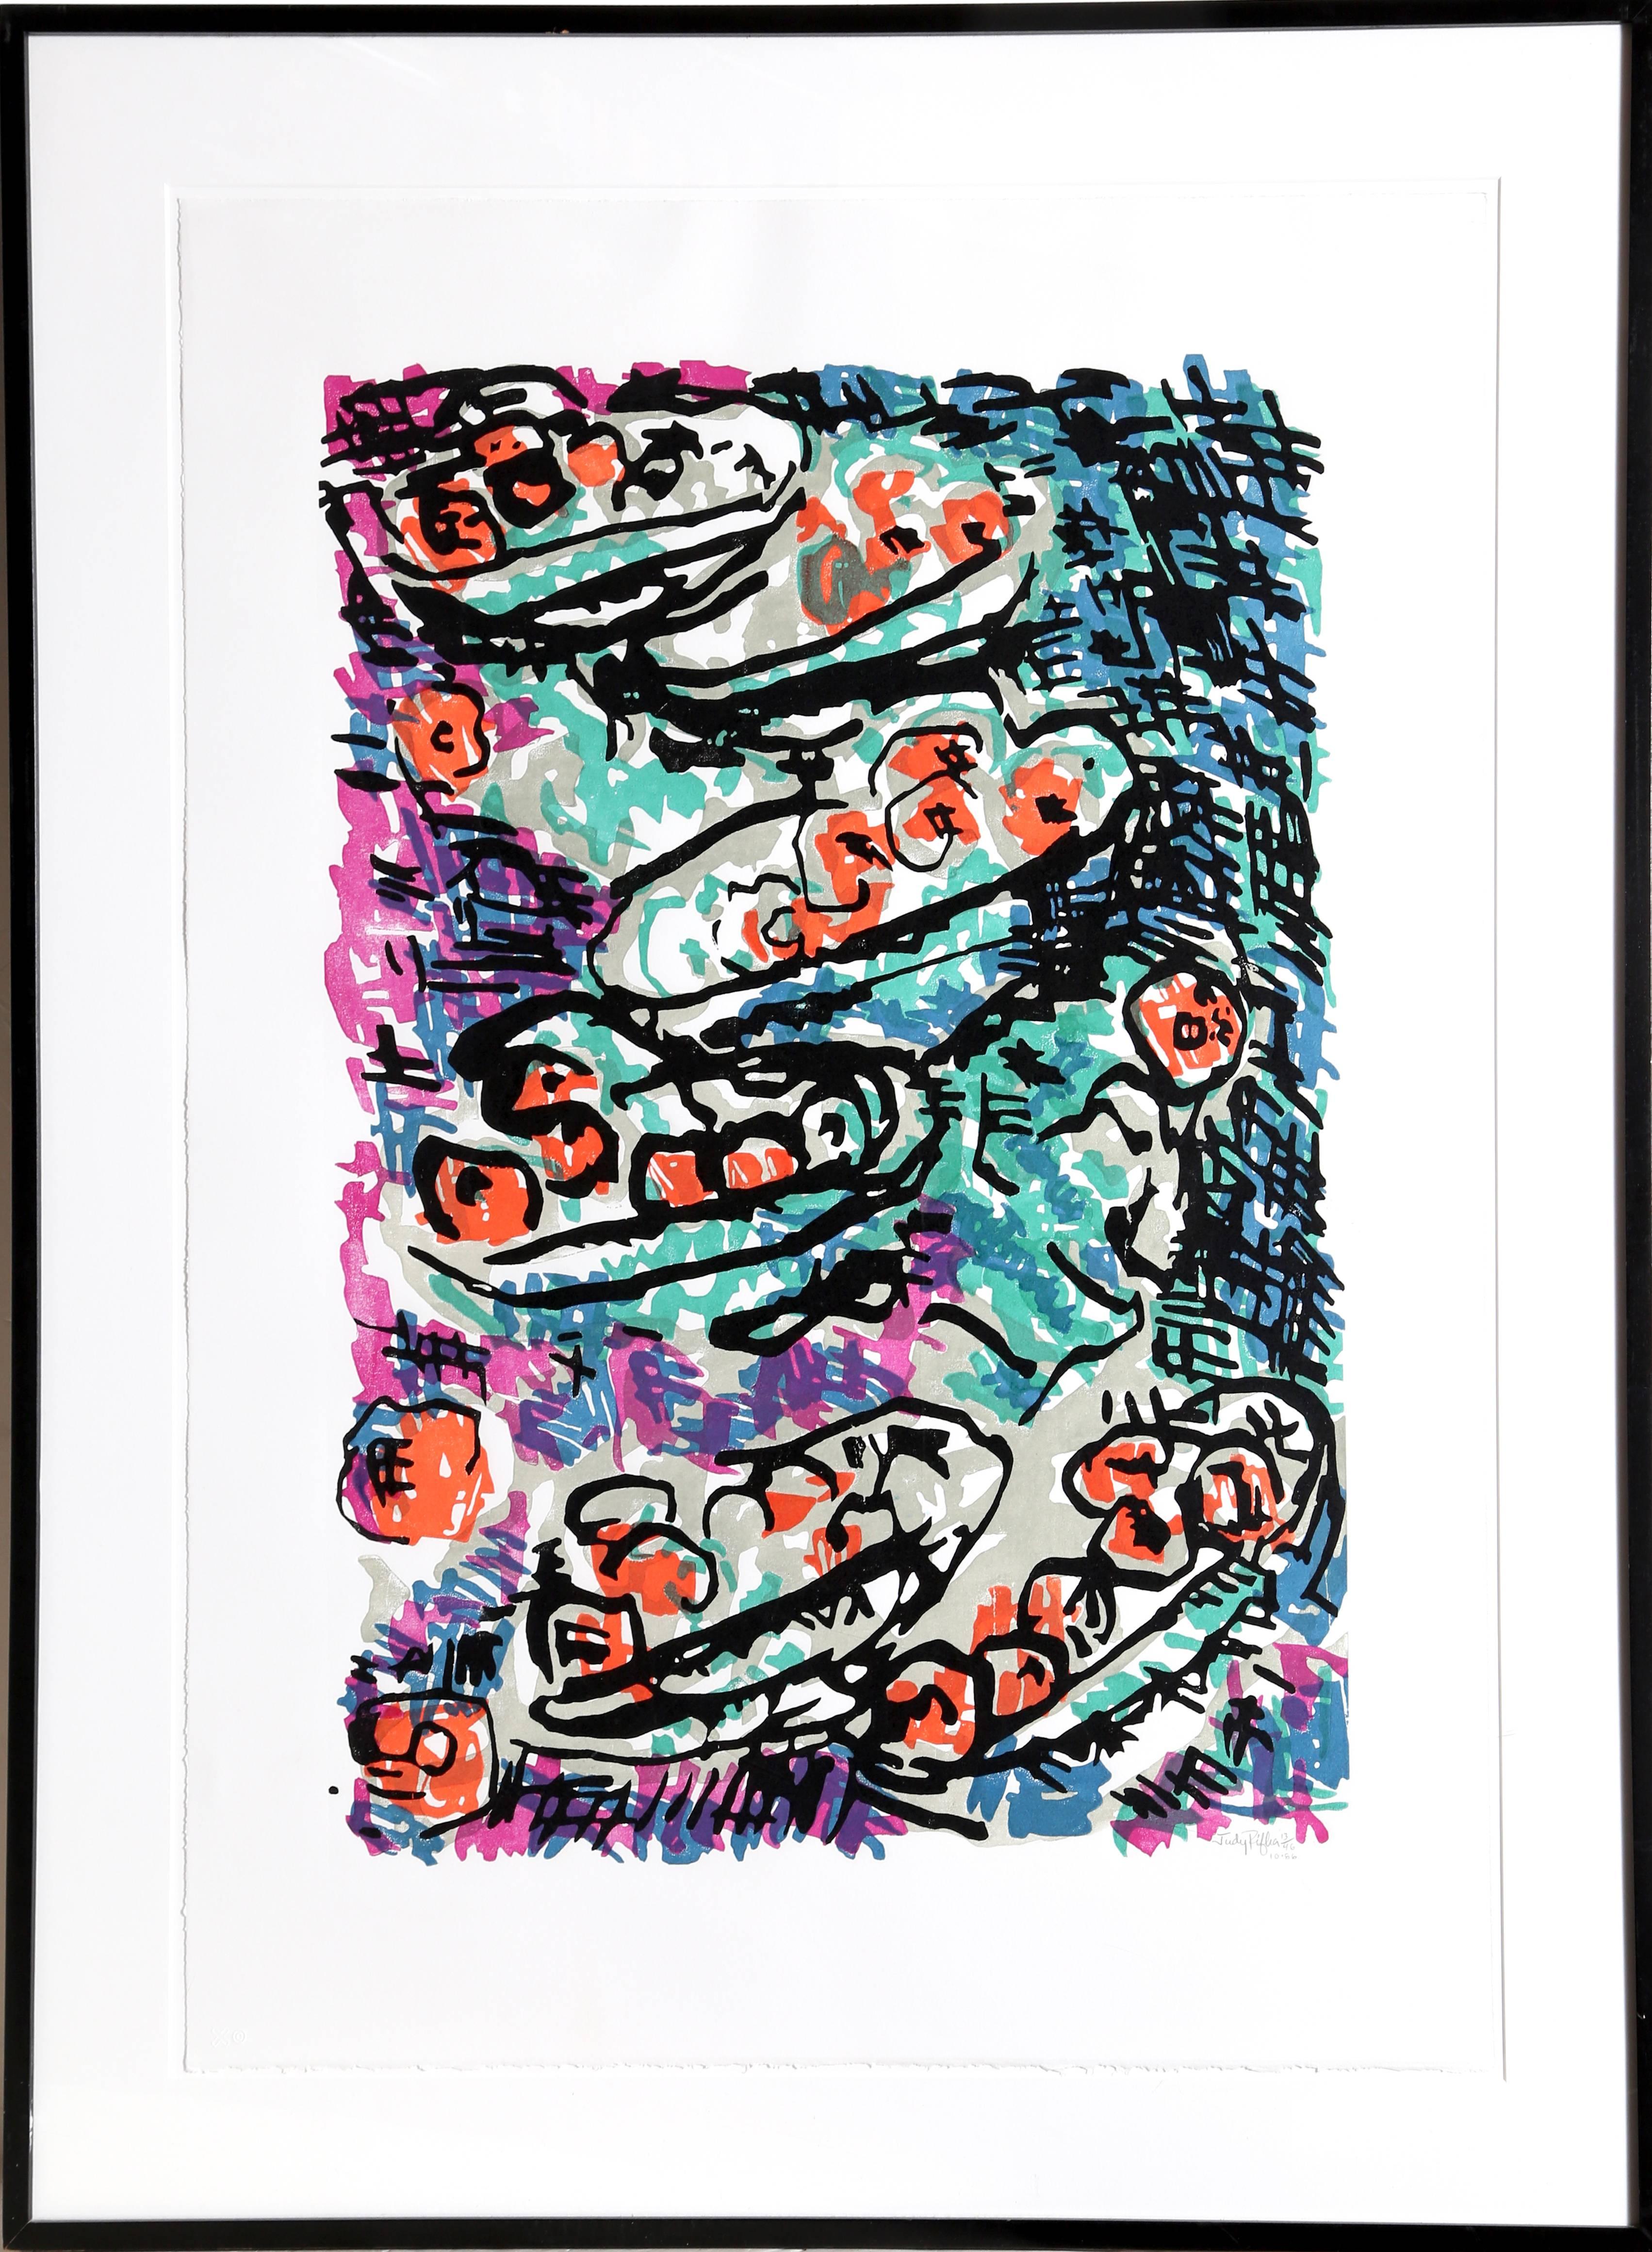 Künstlerin: Judy Rifka, Amerikanerin (1945 - )
Titel: Stilleben
Jahr: 1986
Medium: Holzschnitt, mit Bleistift signiert und nummeriert
Auflage: 13/46
Bild: 29 x 21 Zoll
Größe: 37  x 28 in. (93.98  x 71,12 cm)
Rahmen: 44 x 35 Zoll